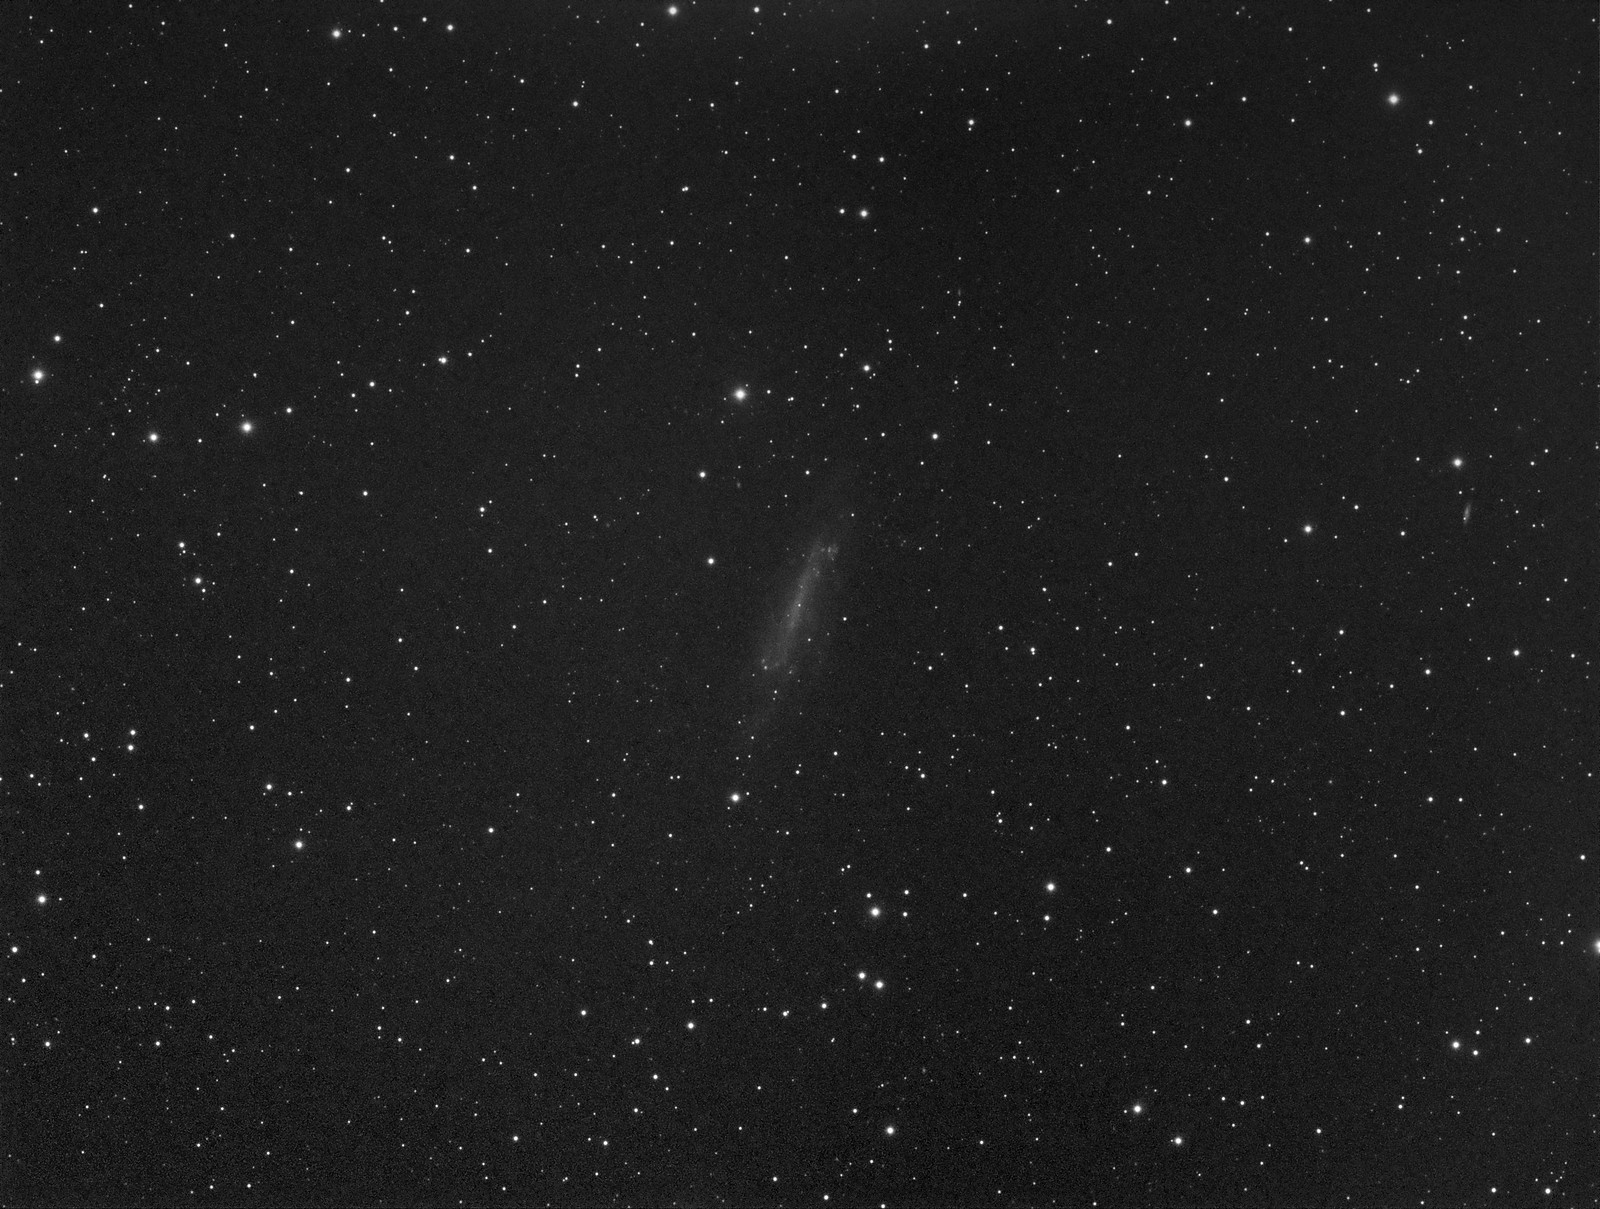 003 - NGC 4236 - Luminance